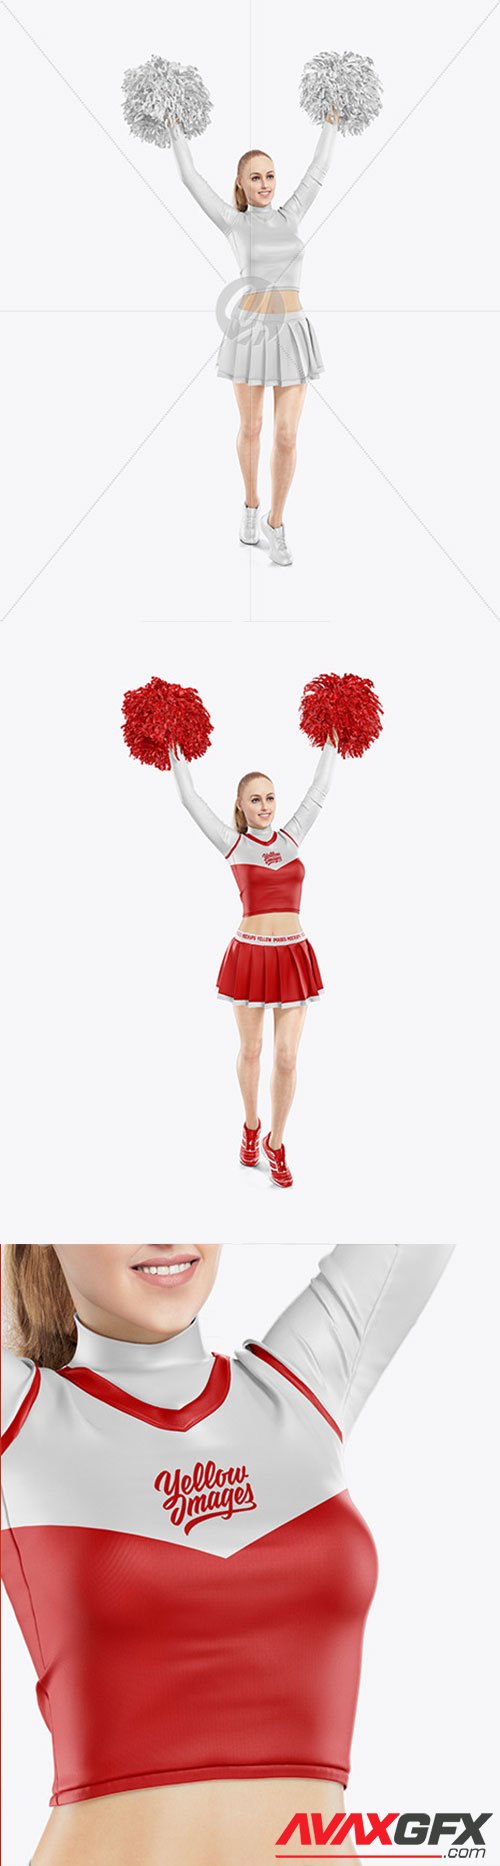 Cheerleader Girl Mockup 63015